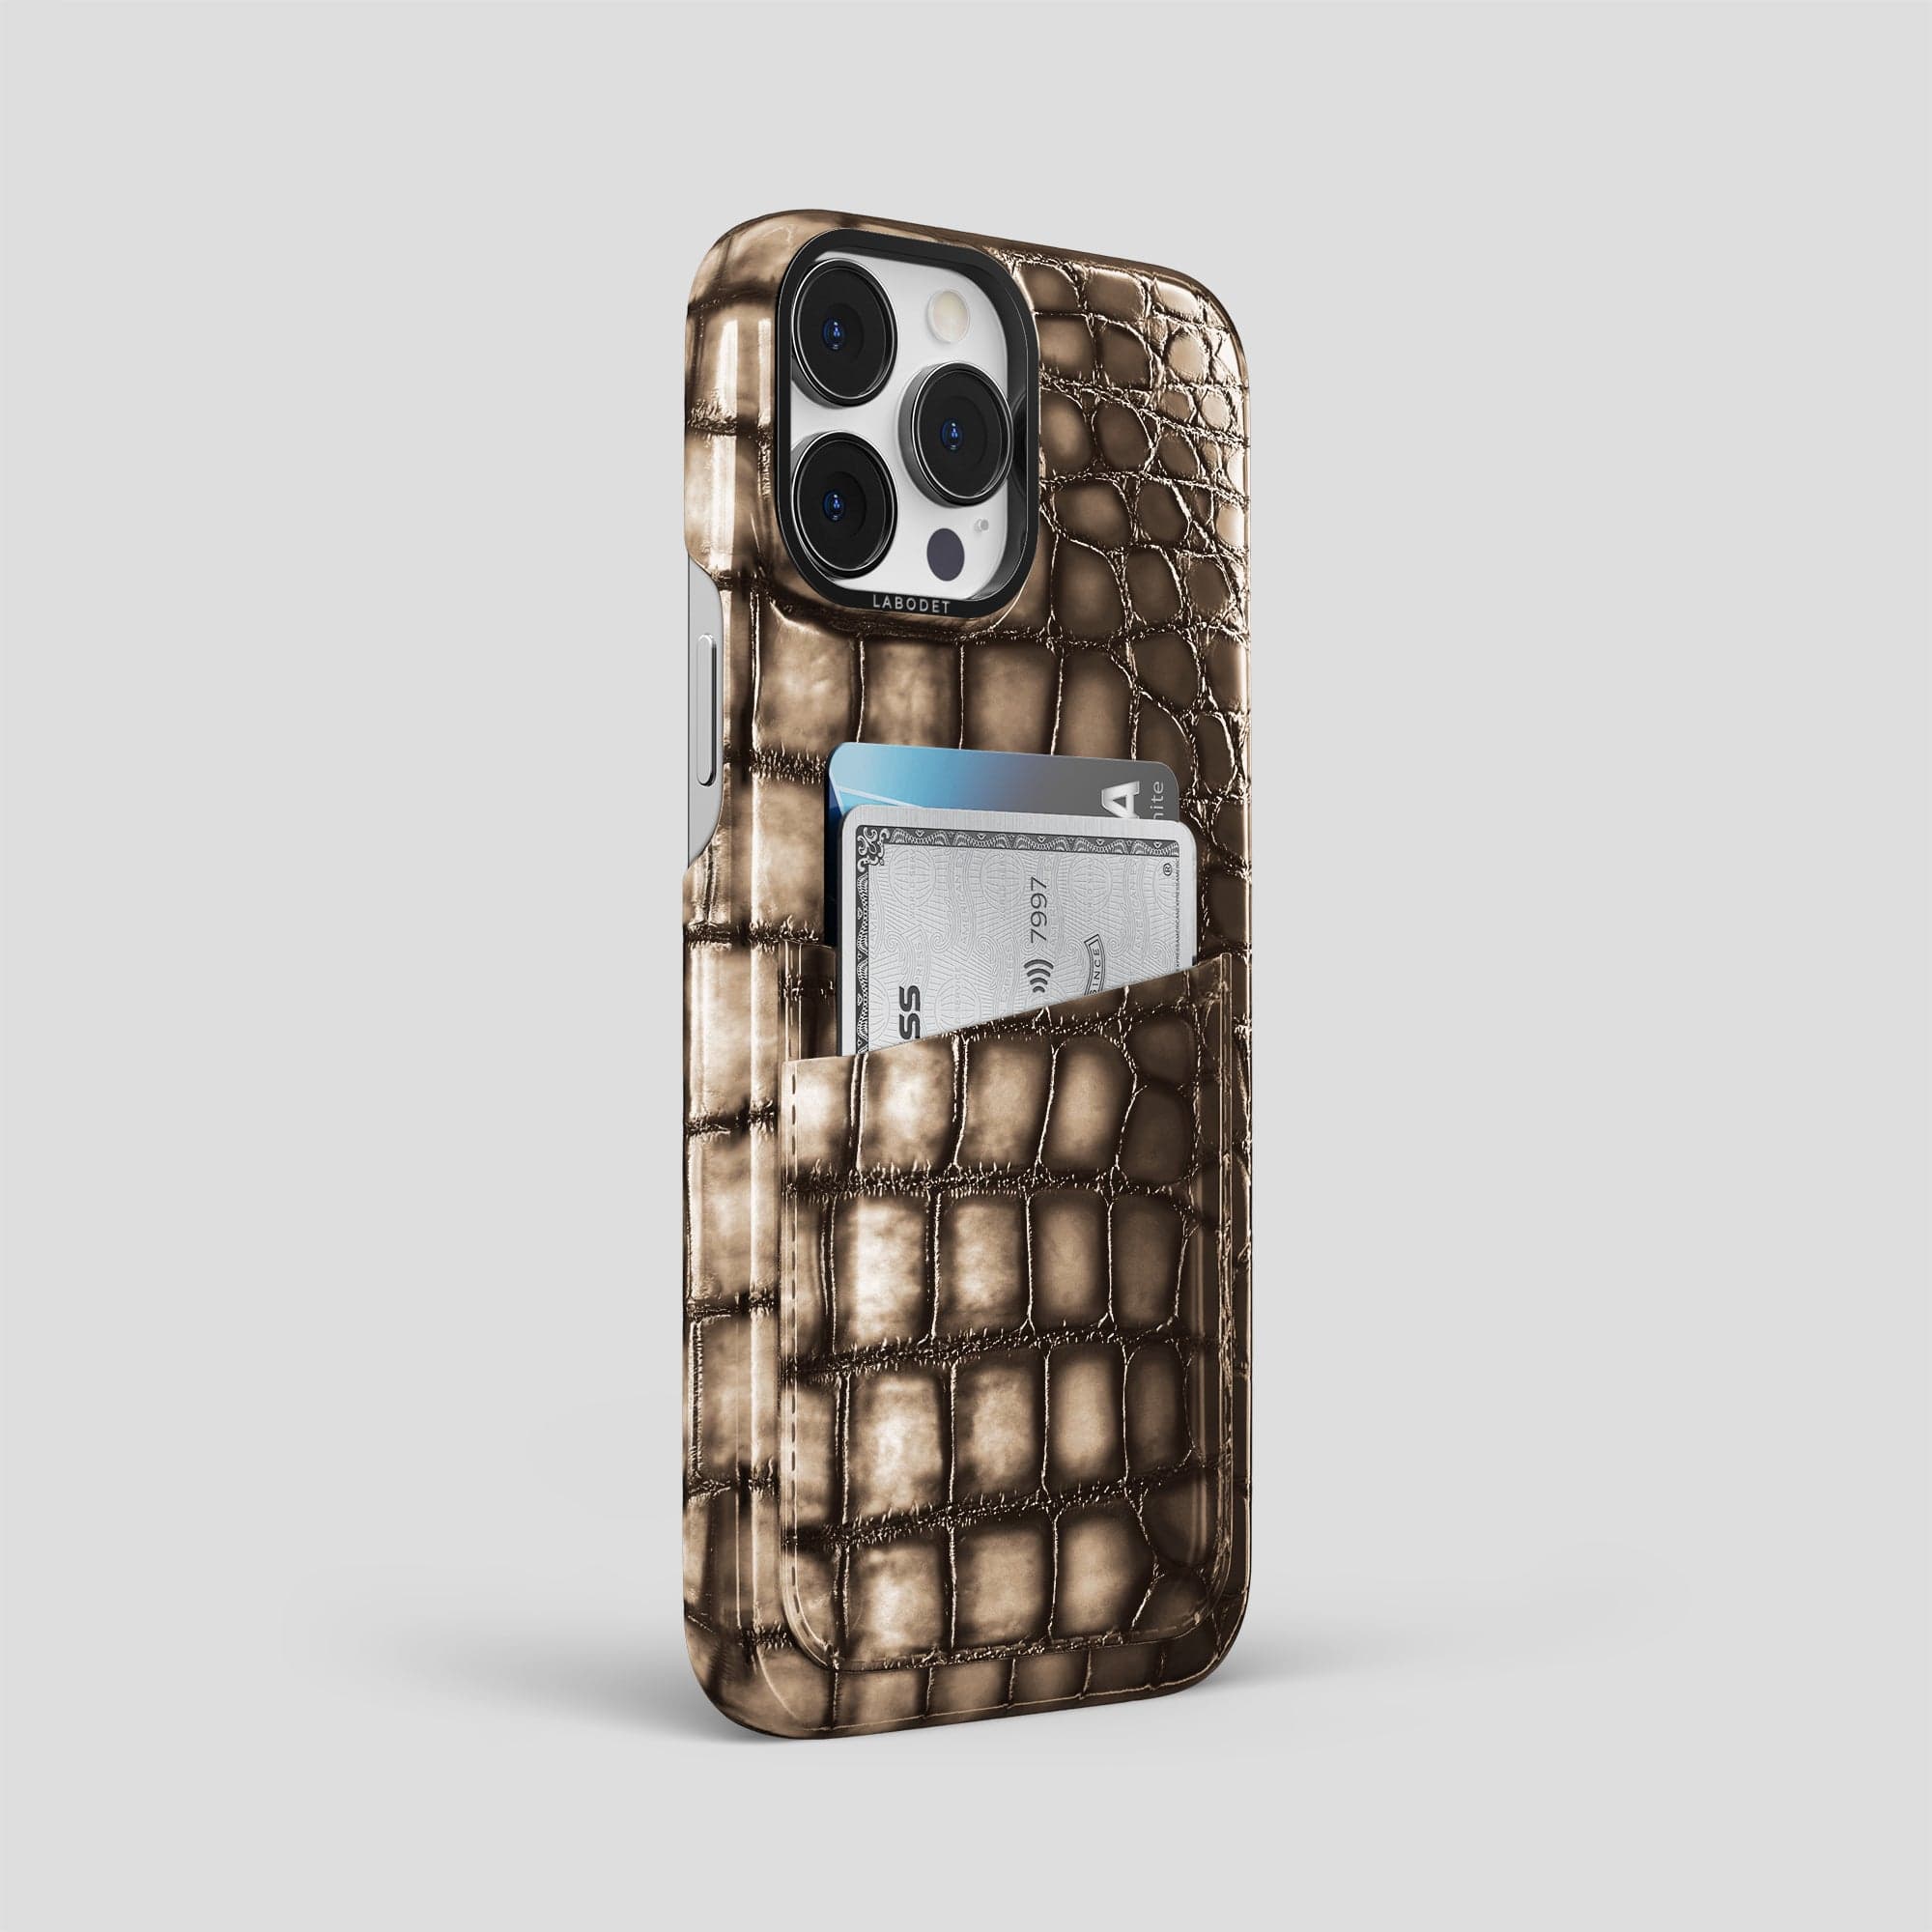 iPhone 14 Pro Max Double Card Case Coloré Ostrich – Labodet